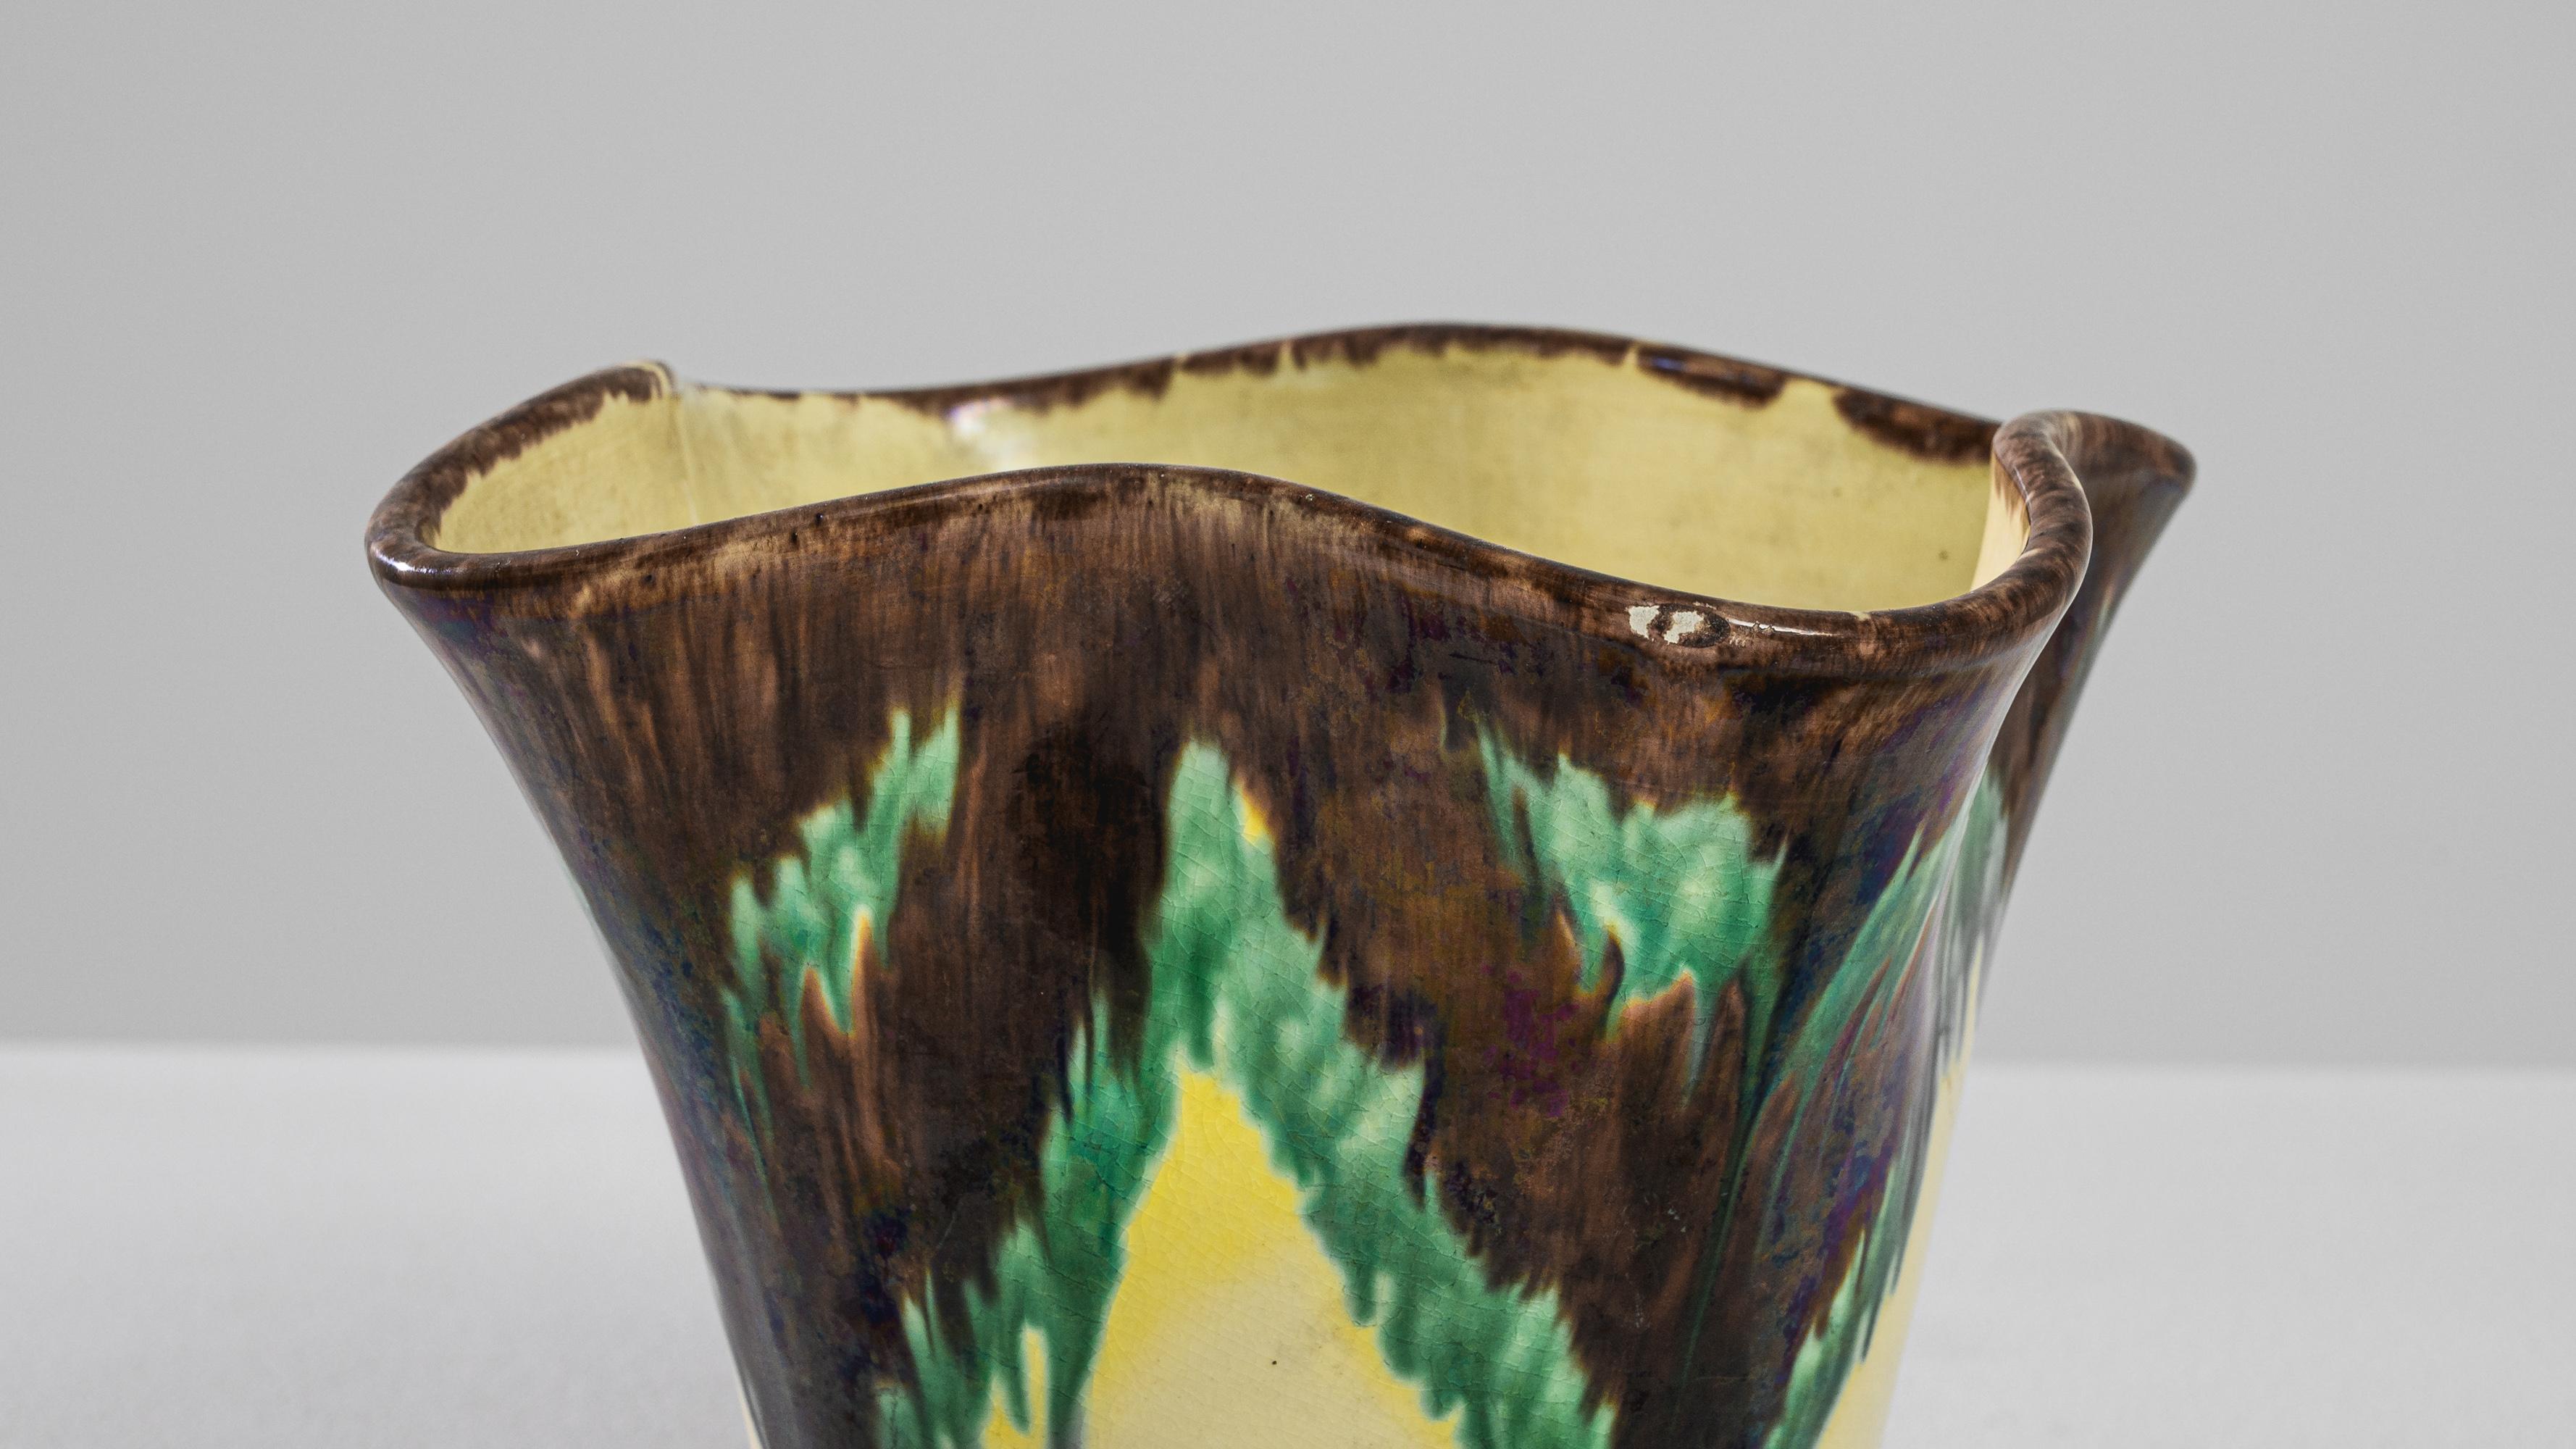 Dieses belgische Keramikgefäß aus den 1920er Jahren ist ein bemerkenswertes Relikt der Art-déco-Ära, das sich durch seine geometrische Form und seine kontrastreiche Farbpalette auszeichnet. Sie ist aus hochwertiger Keramik gefertigt und zeichnet